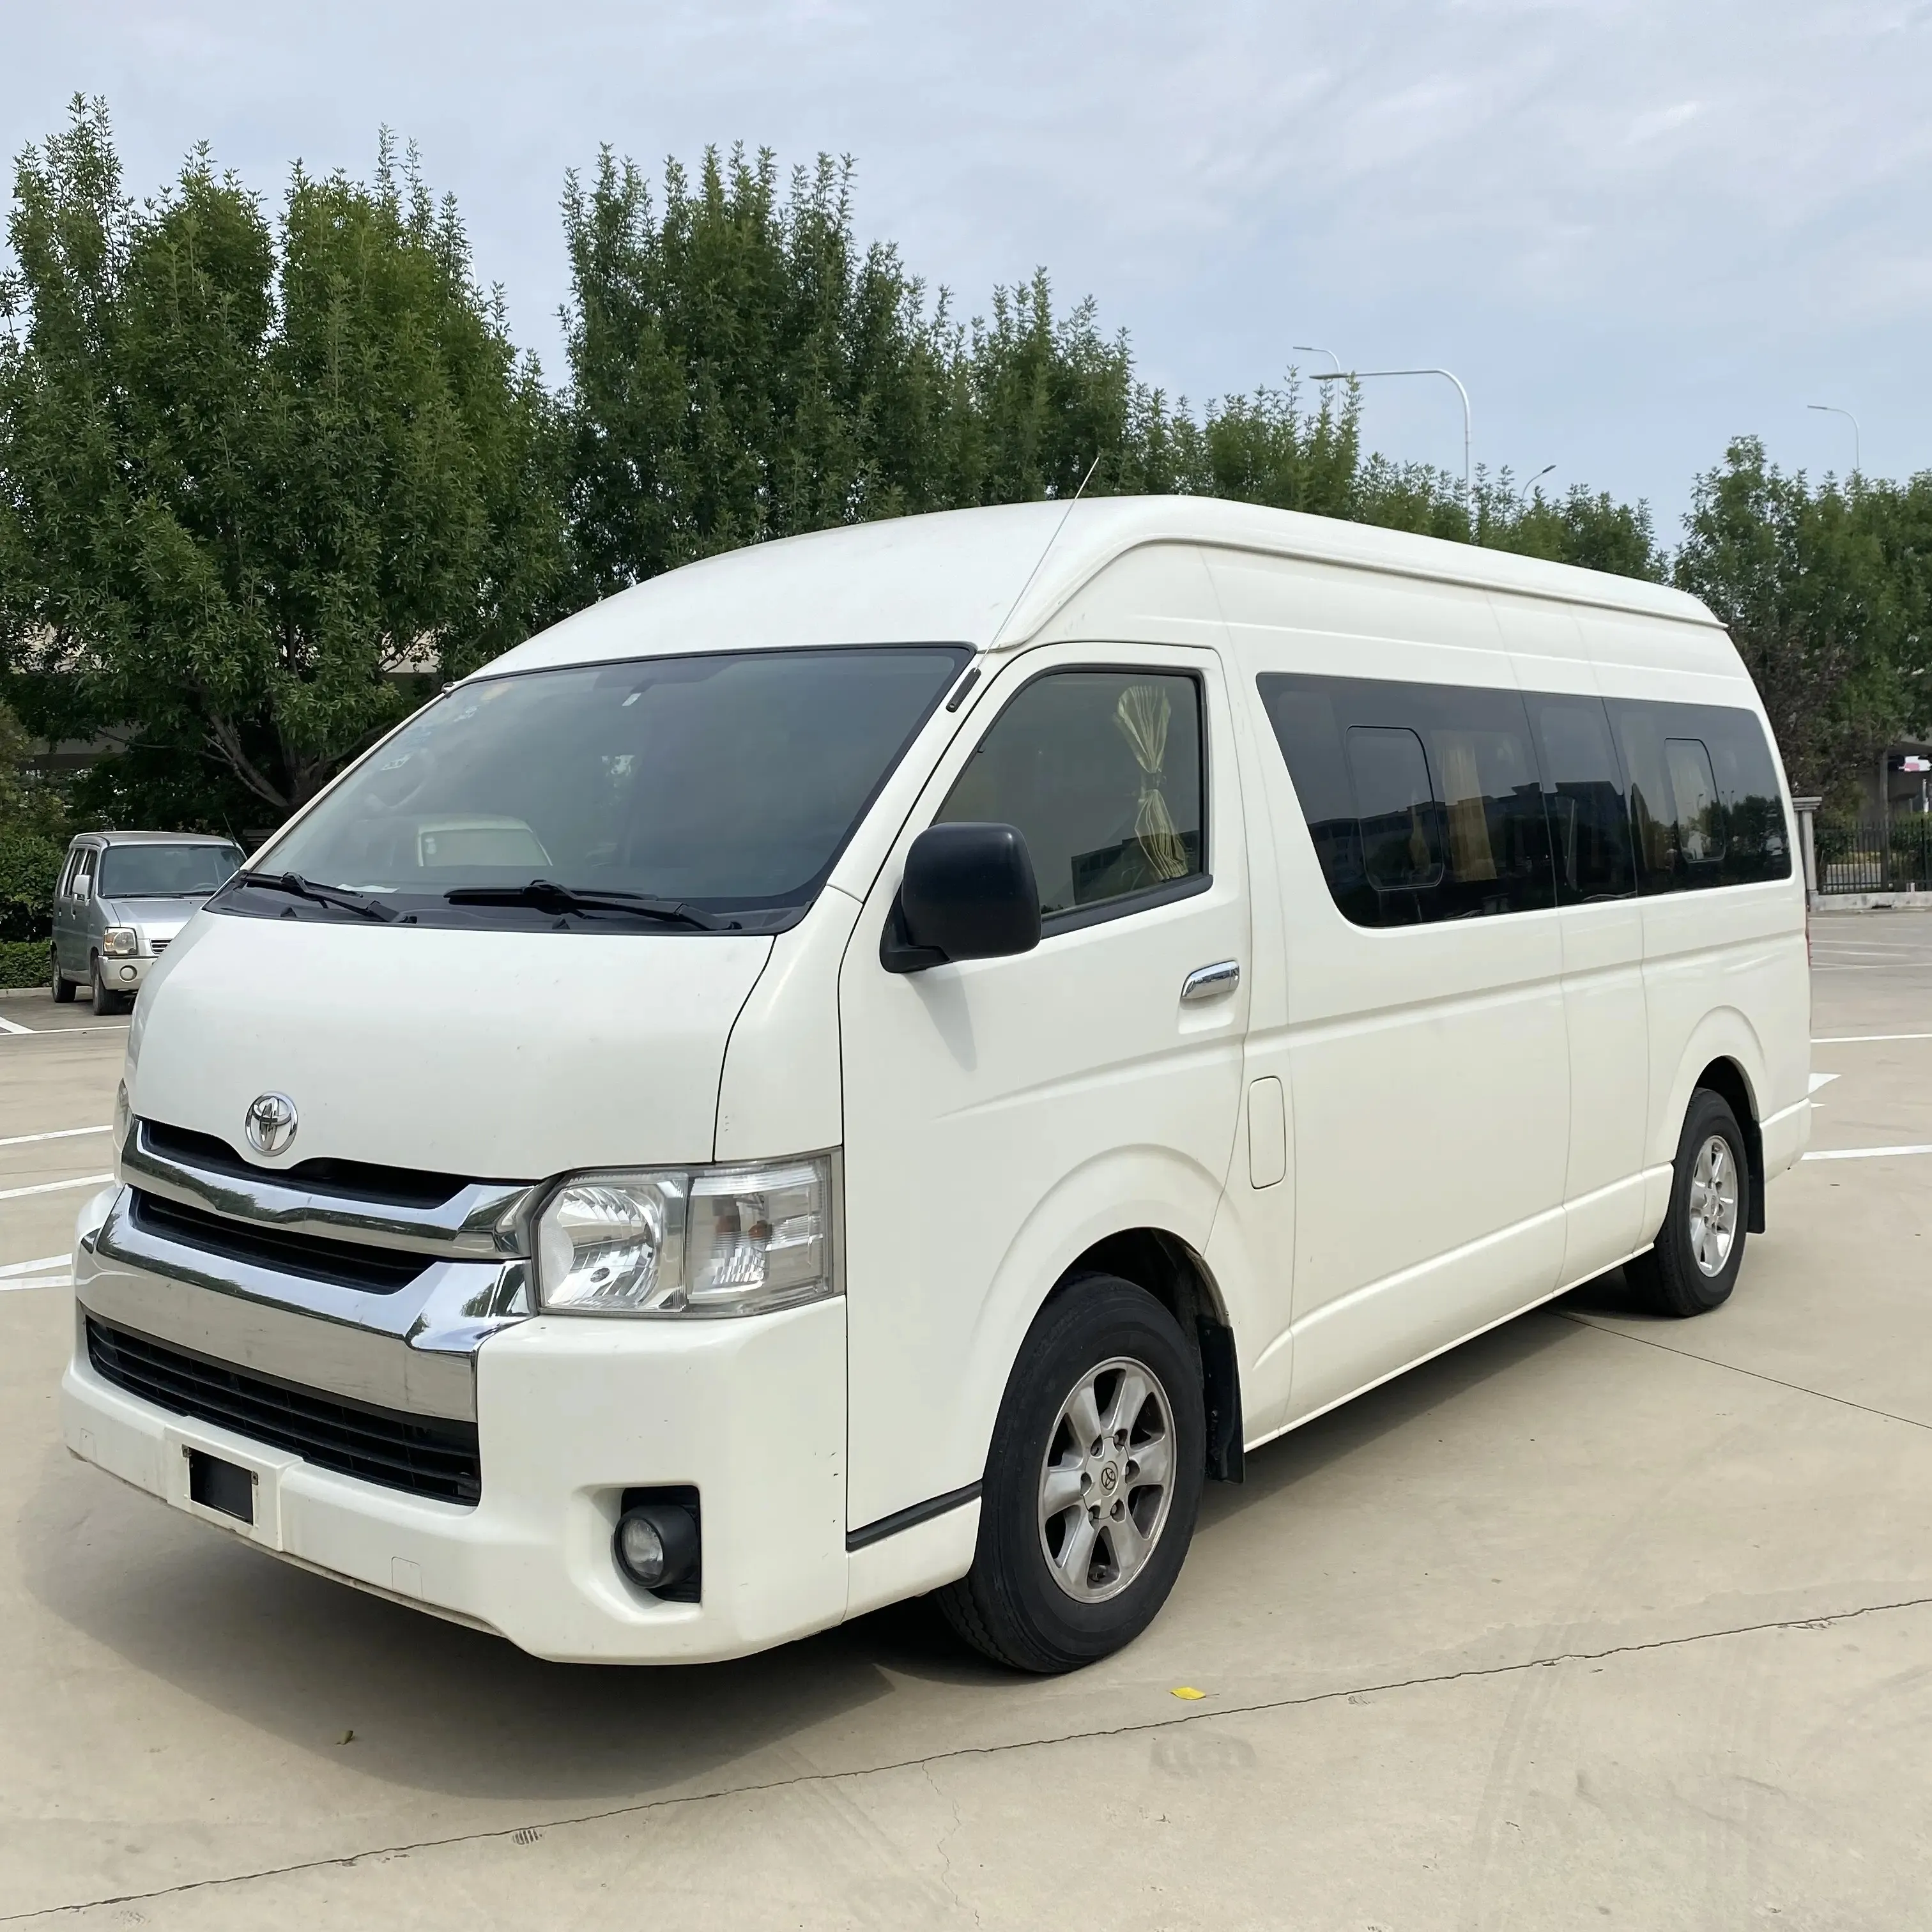 Aktionspreis Toyota Hiace Minibus gebrauchte Busse Benzin Minivan zu verkaufen